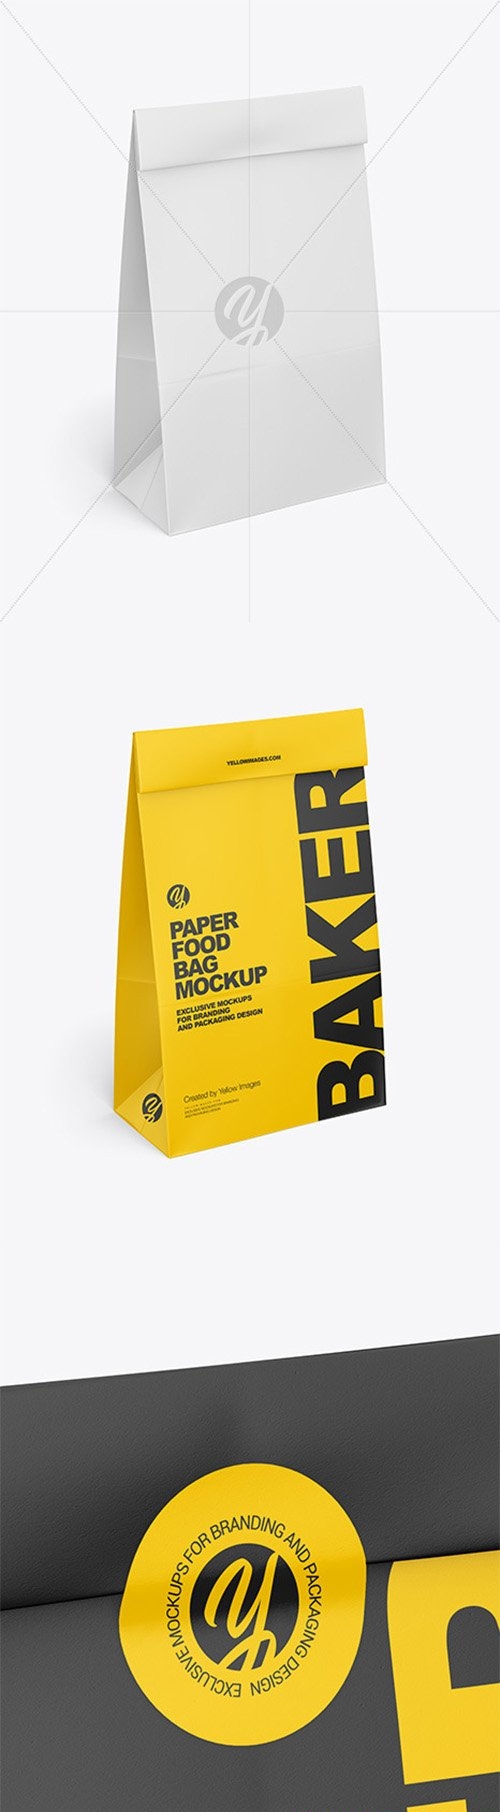 Paper Food Bag Mockup 55274